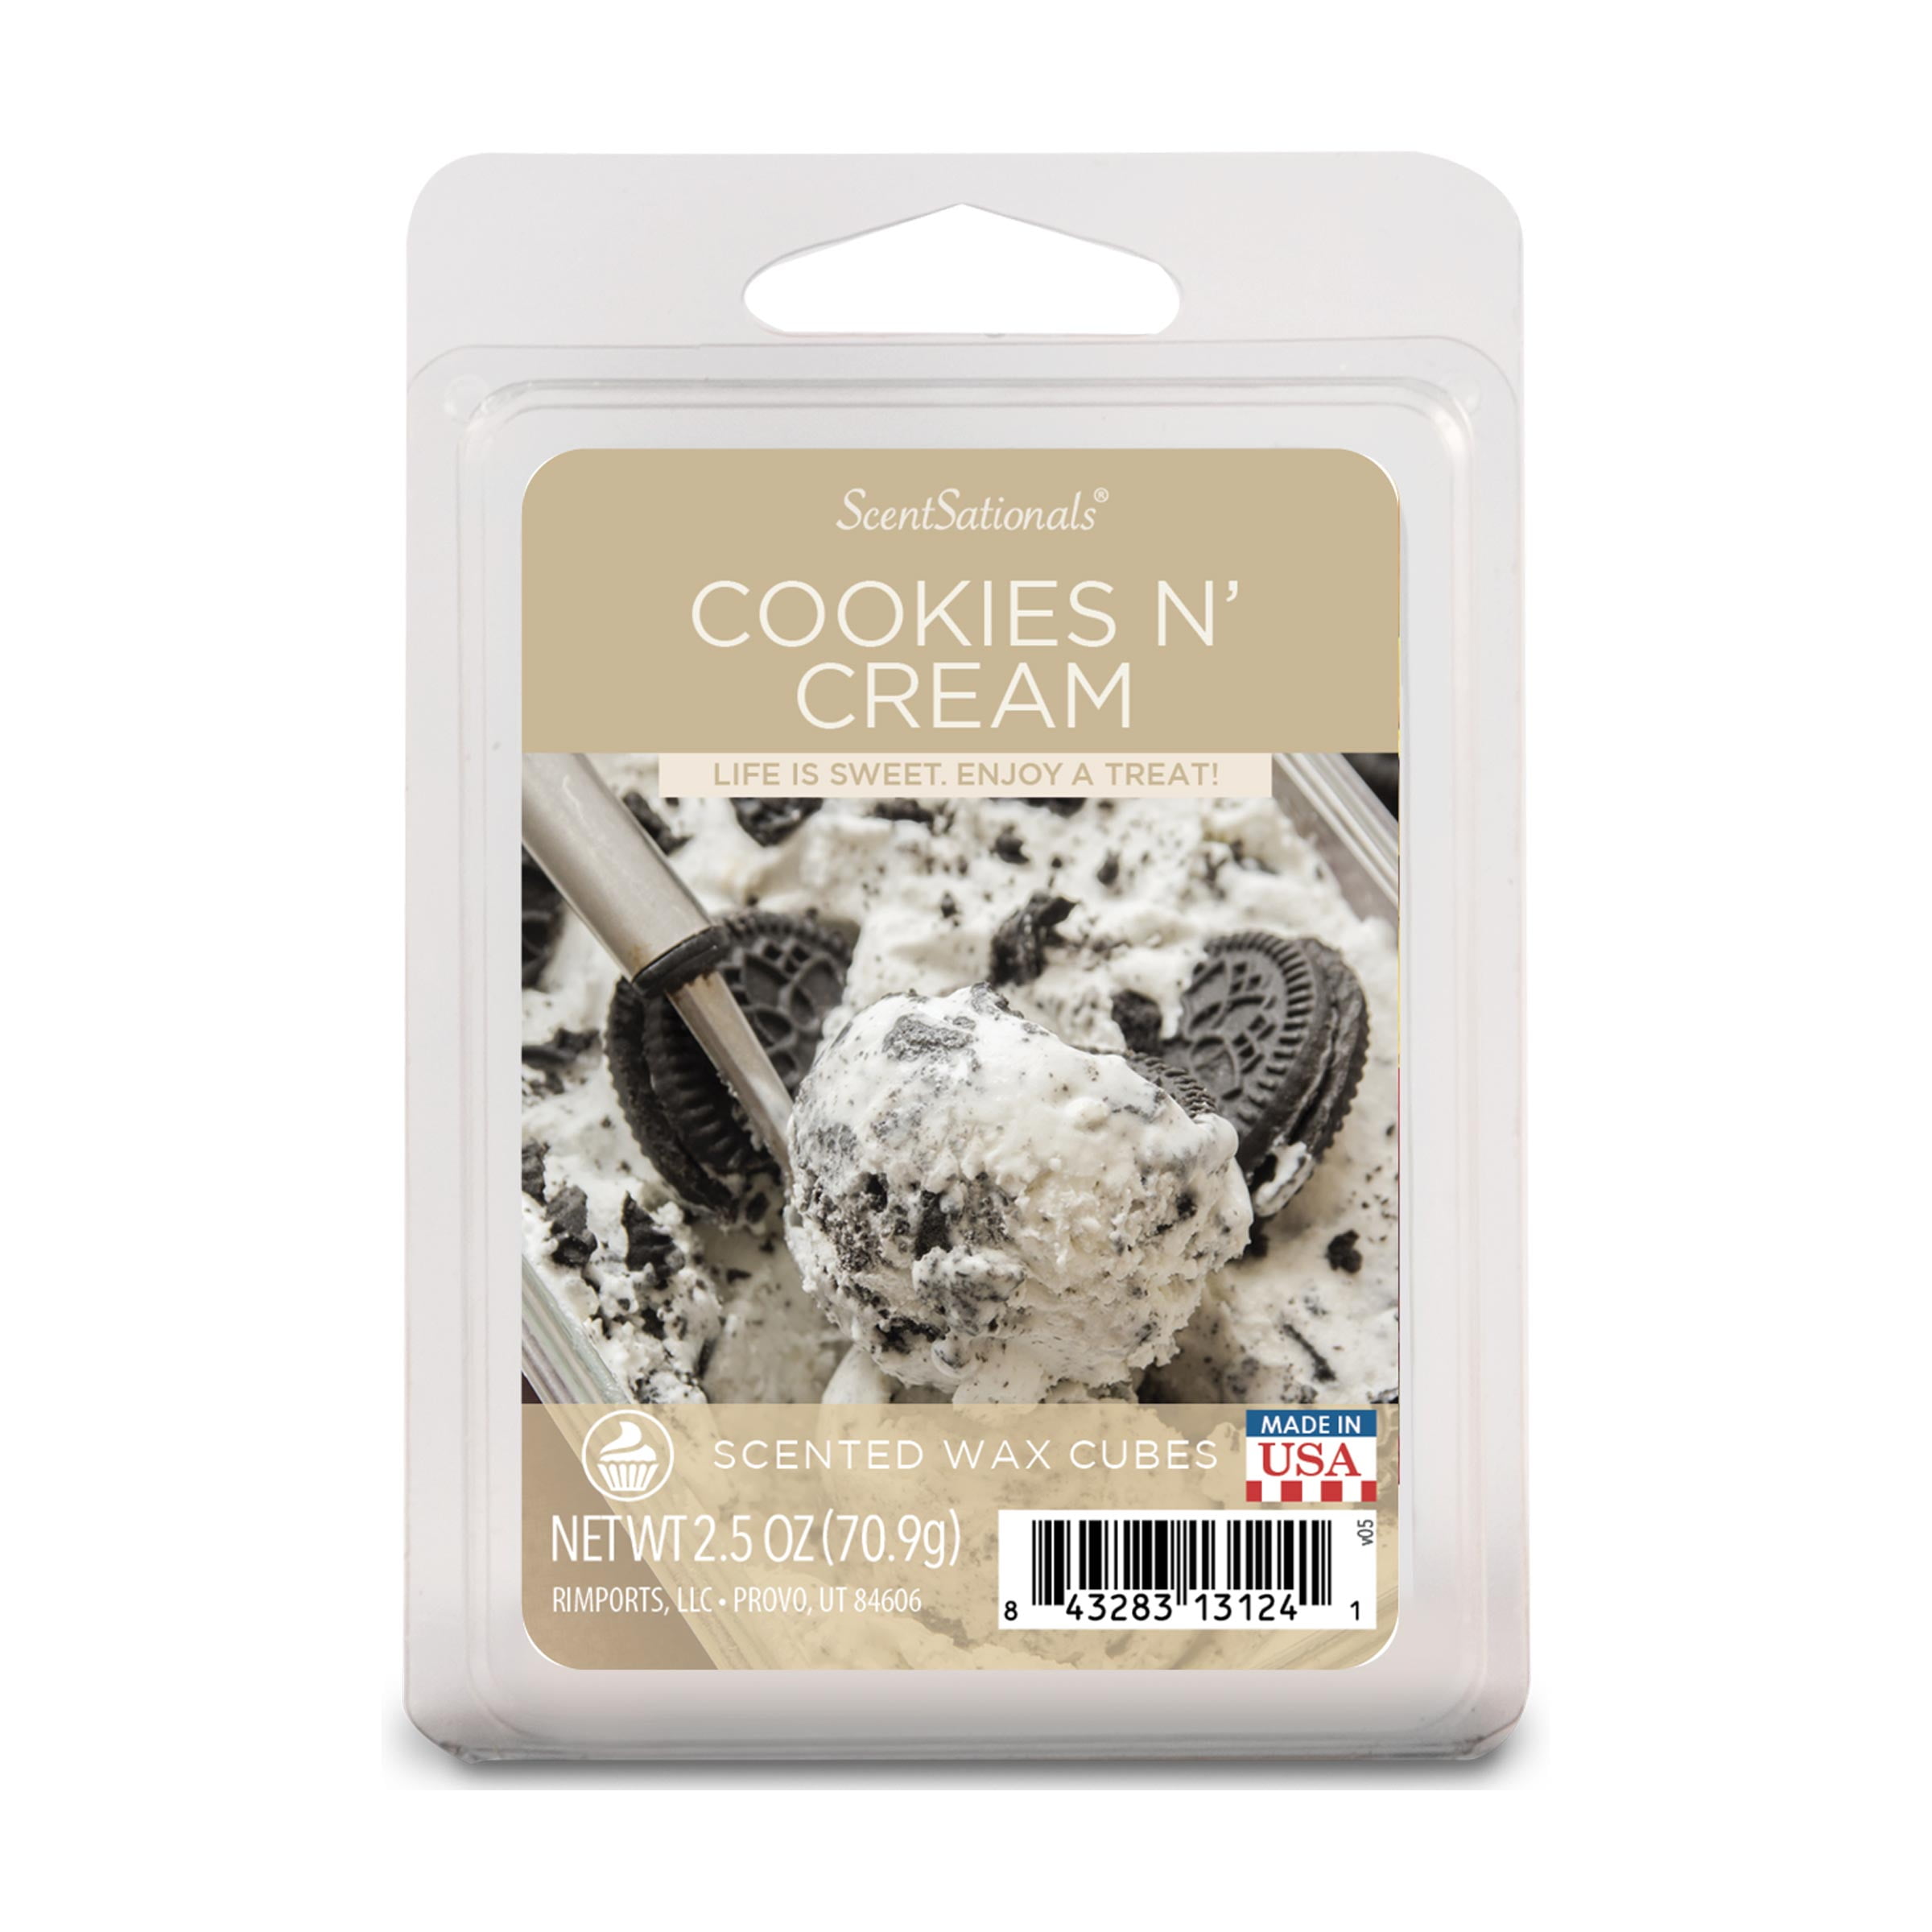 kwaadaardig Bekentenis beweeglijkheid Cookies N' Cream Scented Wax Melts, ScentSationals, 2.5 oz (1-Pack) -  Walmart.com